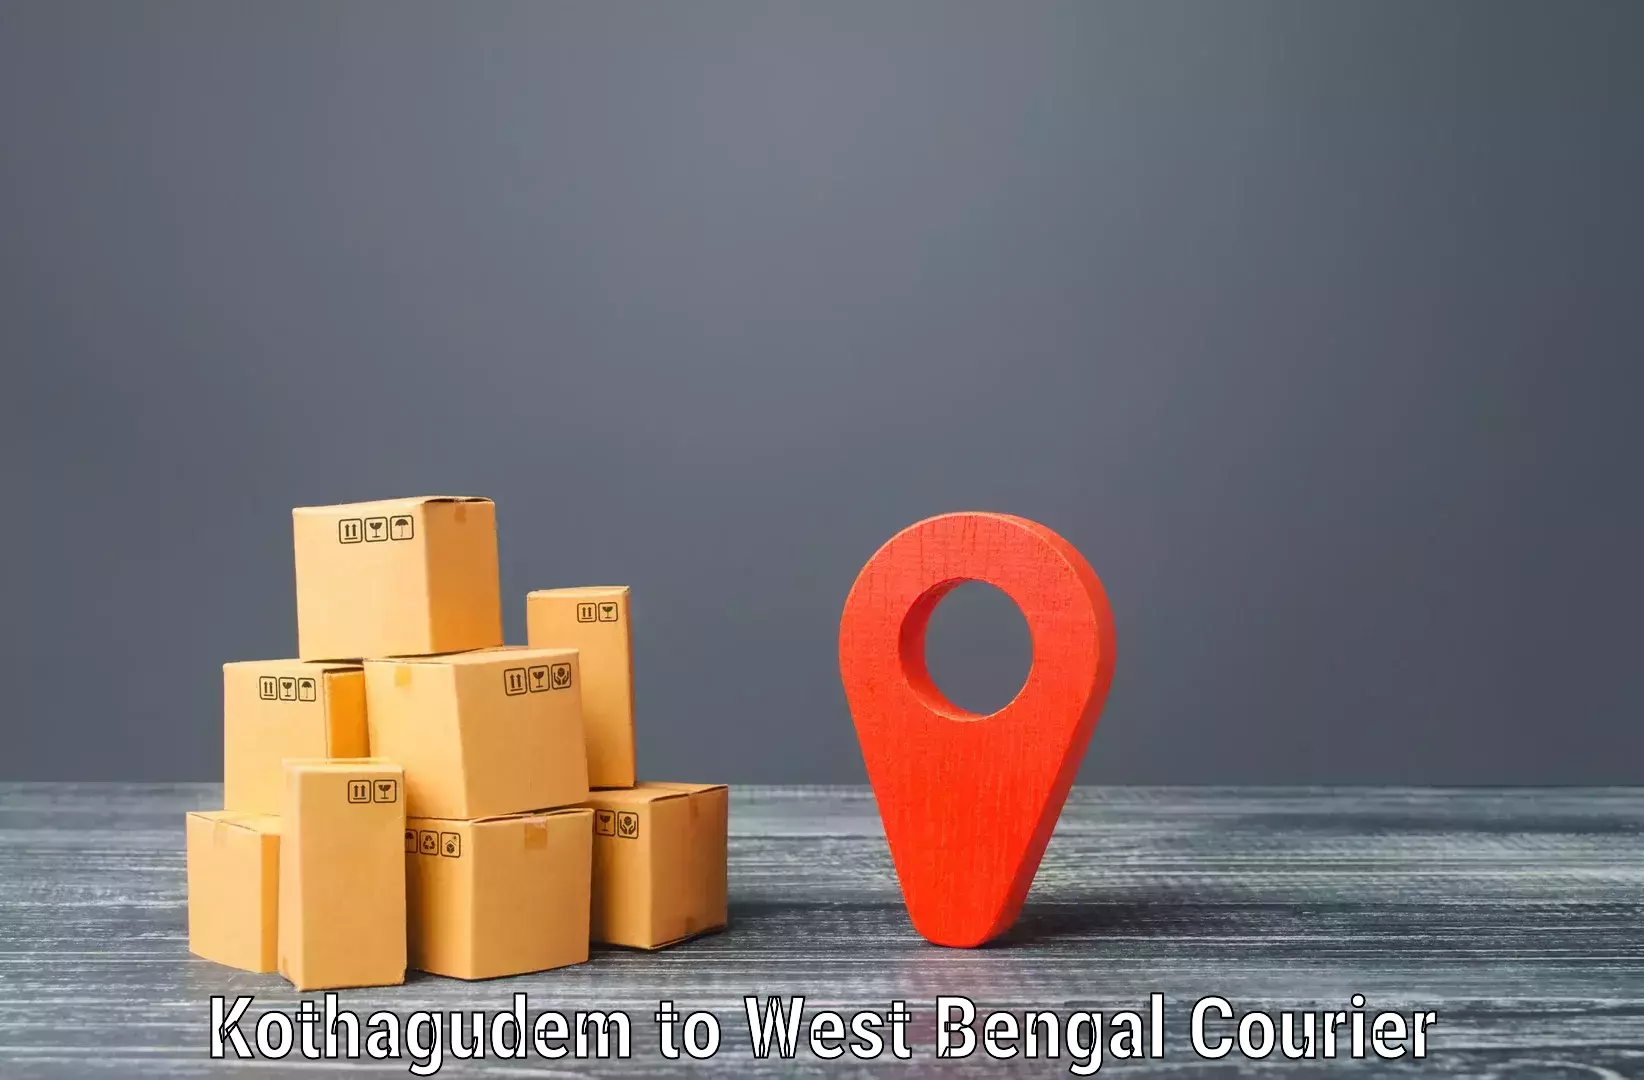 Flexible parcel services Kothagudem to Kurseong